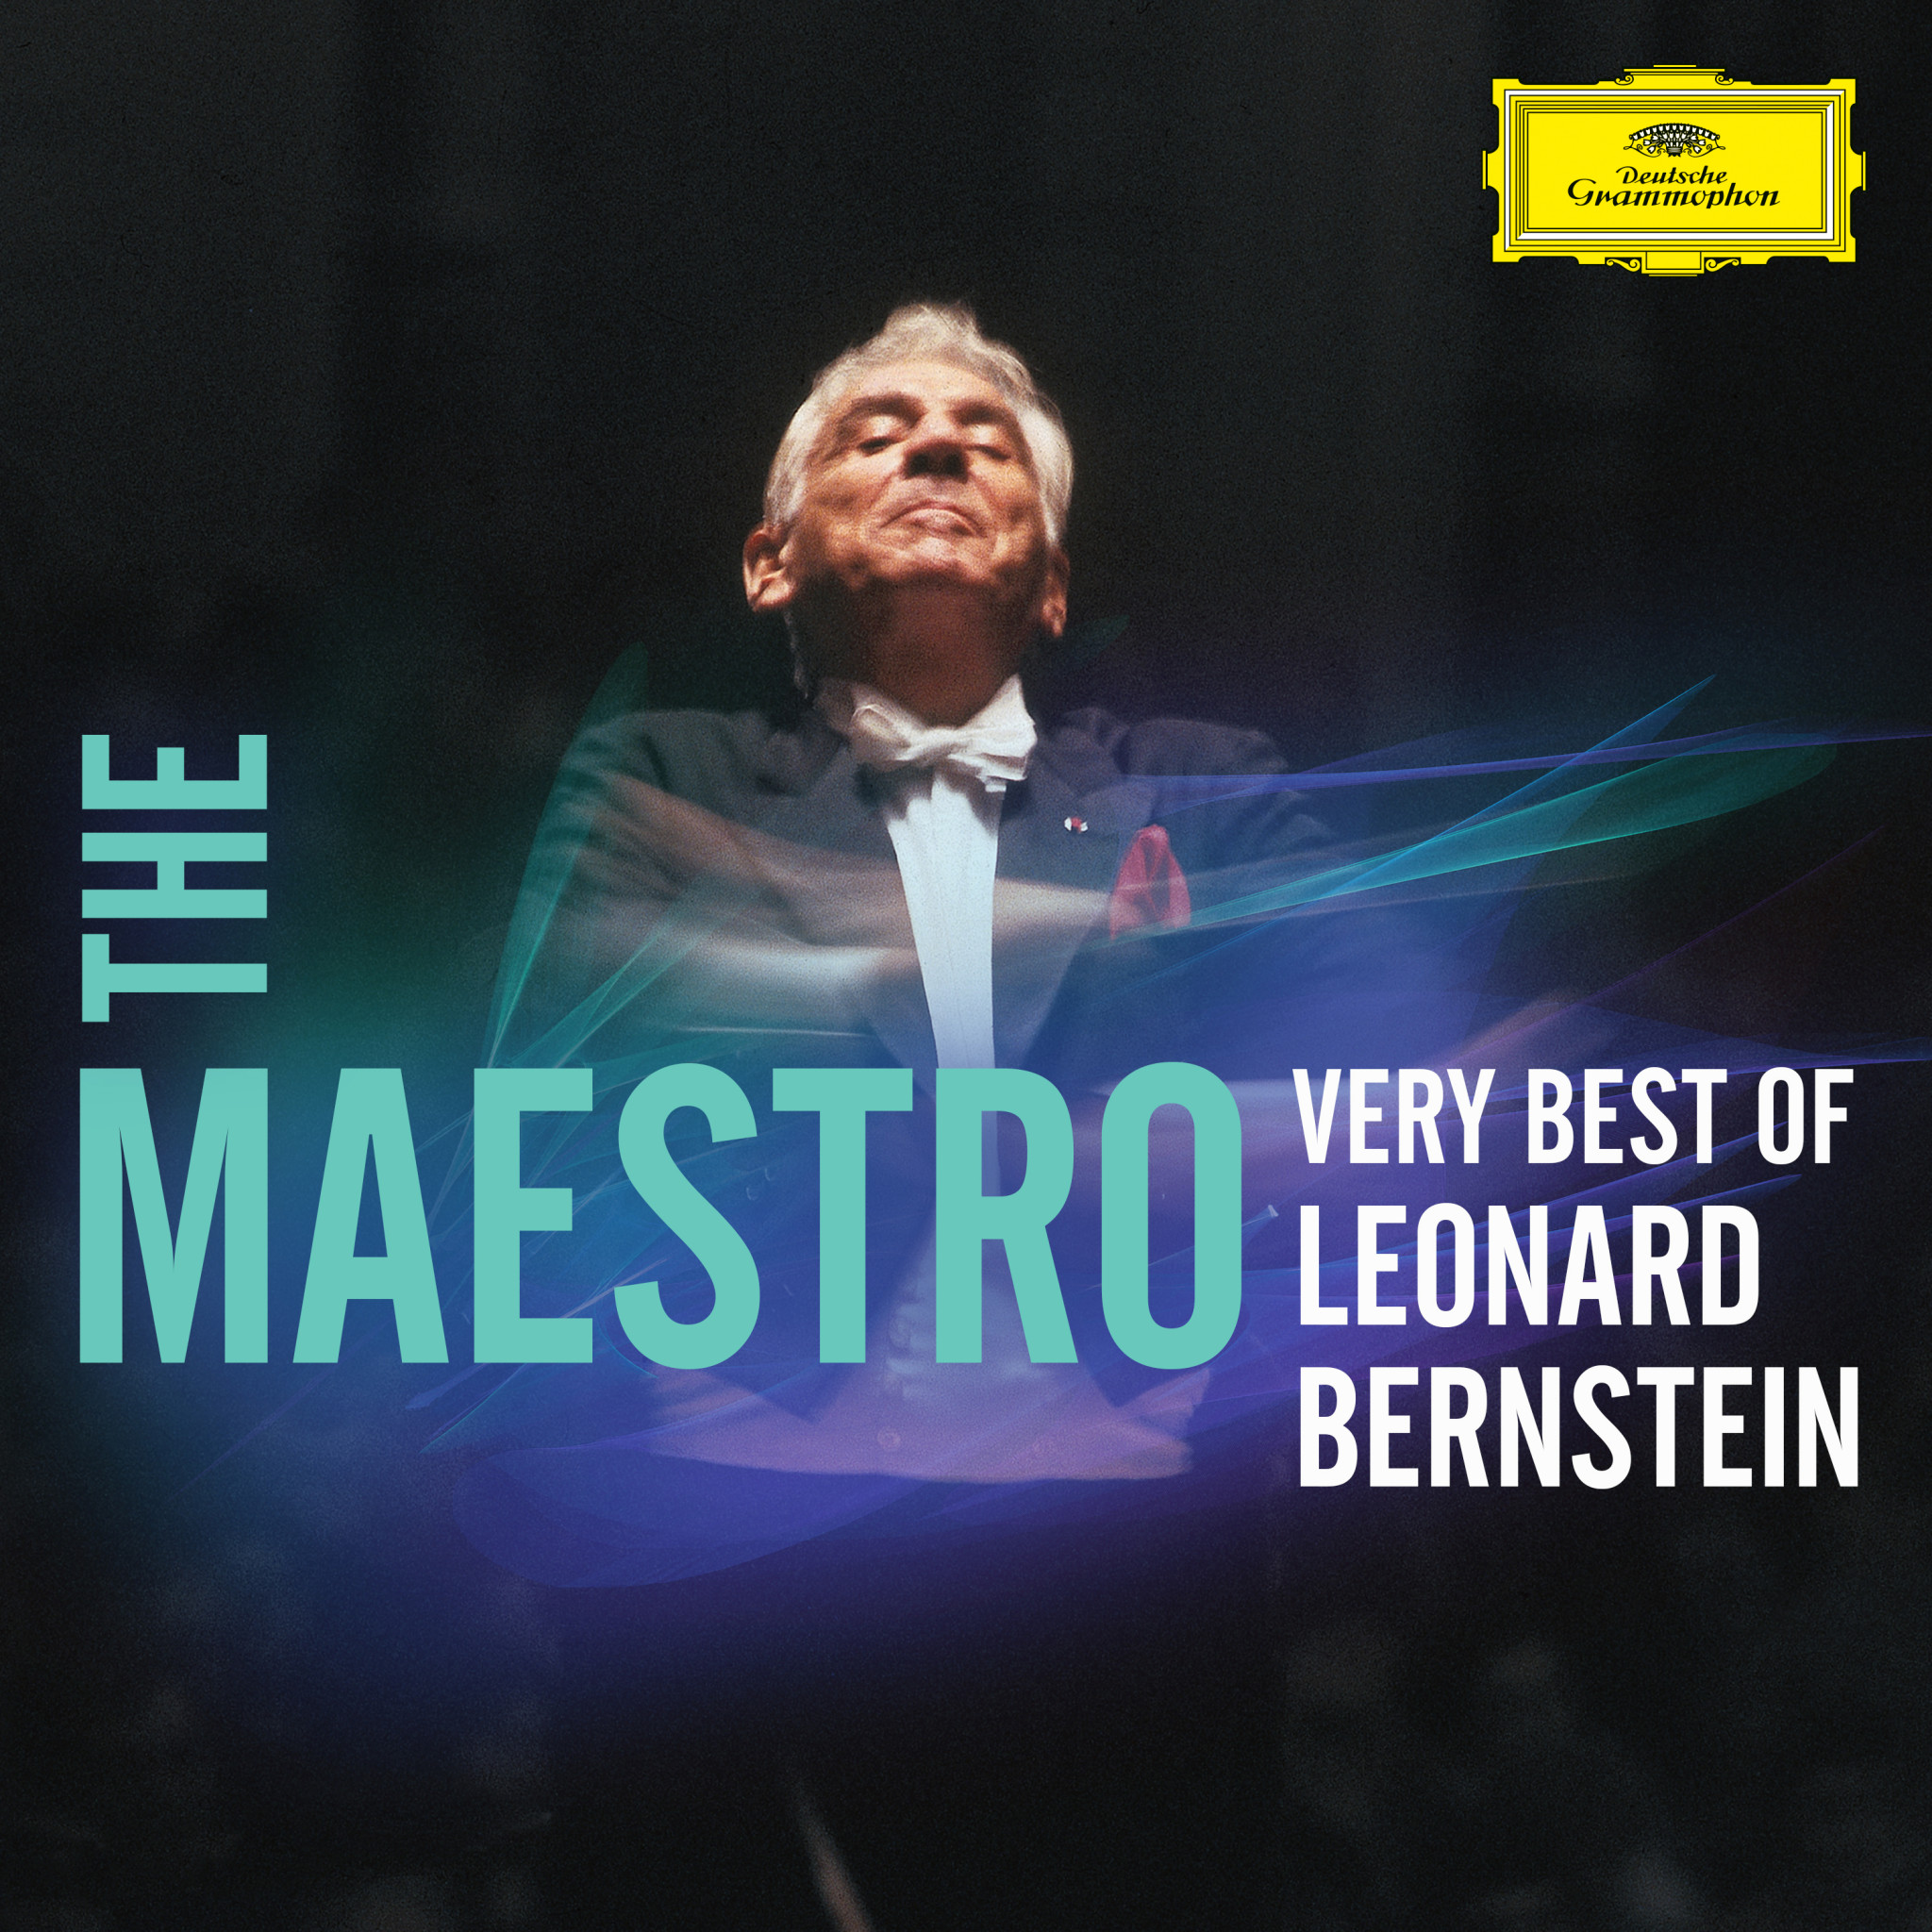 The Maestro - Very Best of Leonard Bernstein